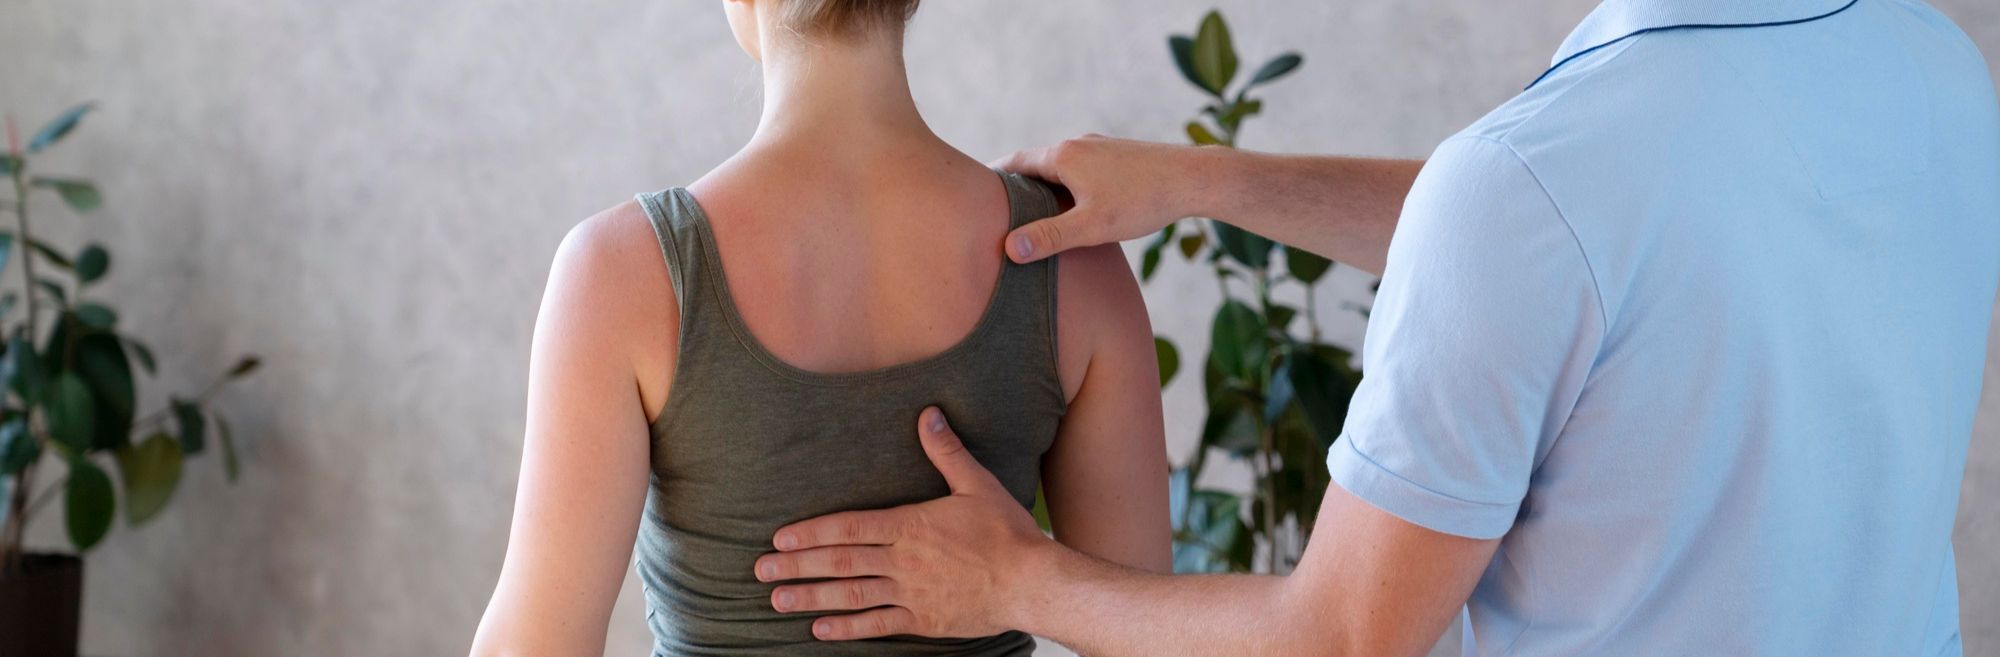 fizioterapeut drži dlan na leđima pacijentice i vodi ju kroz vježbe za kifozu